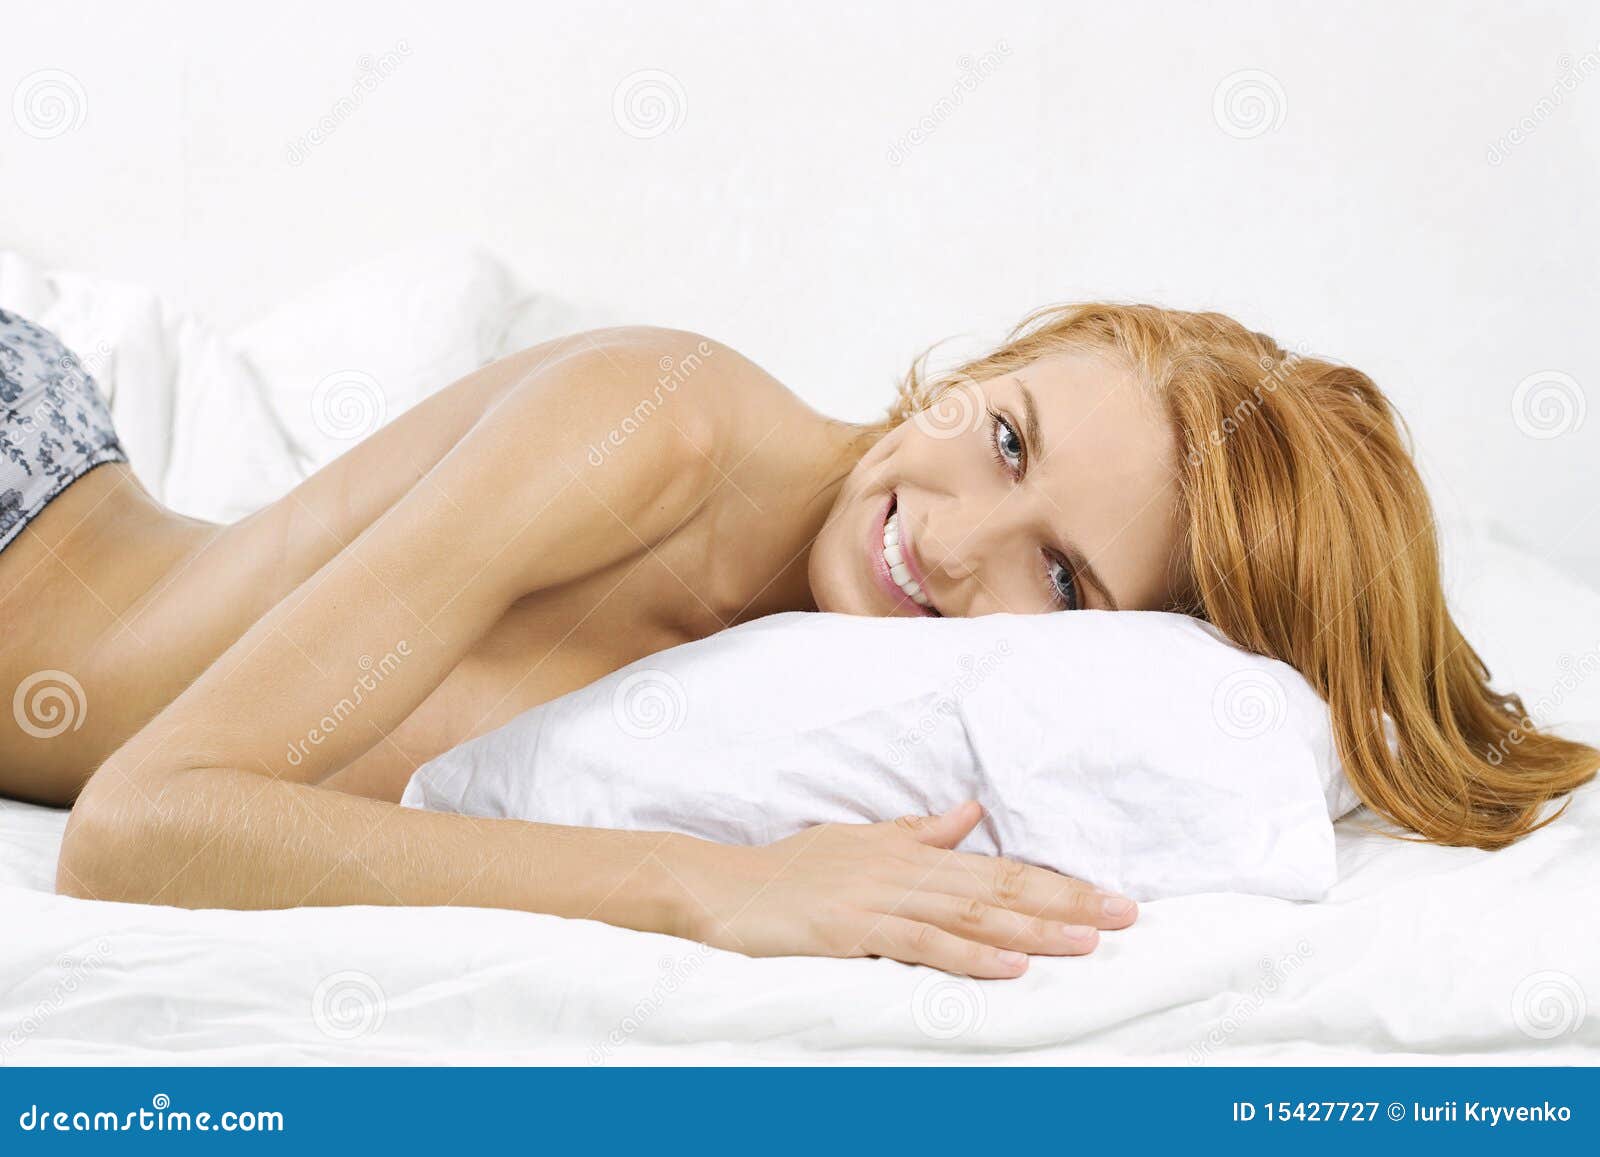 Удовольствие женщины в постели